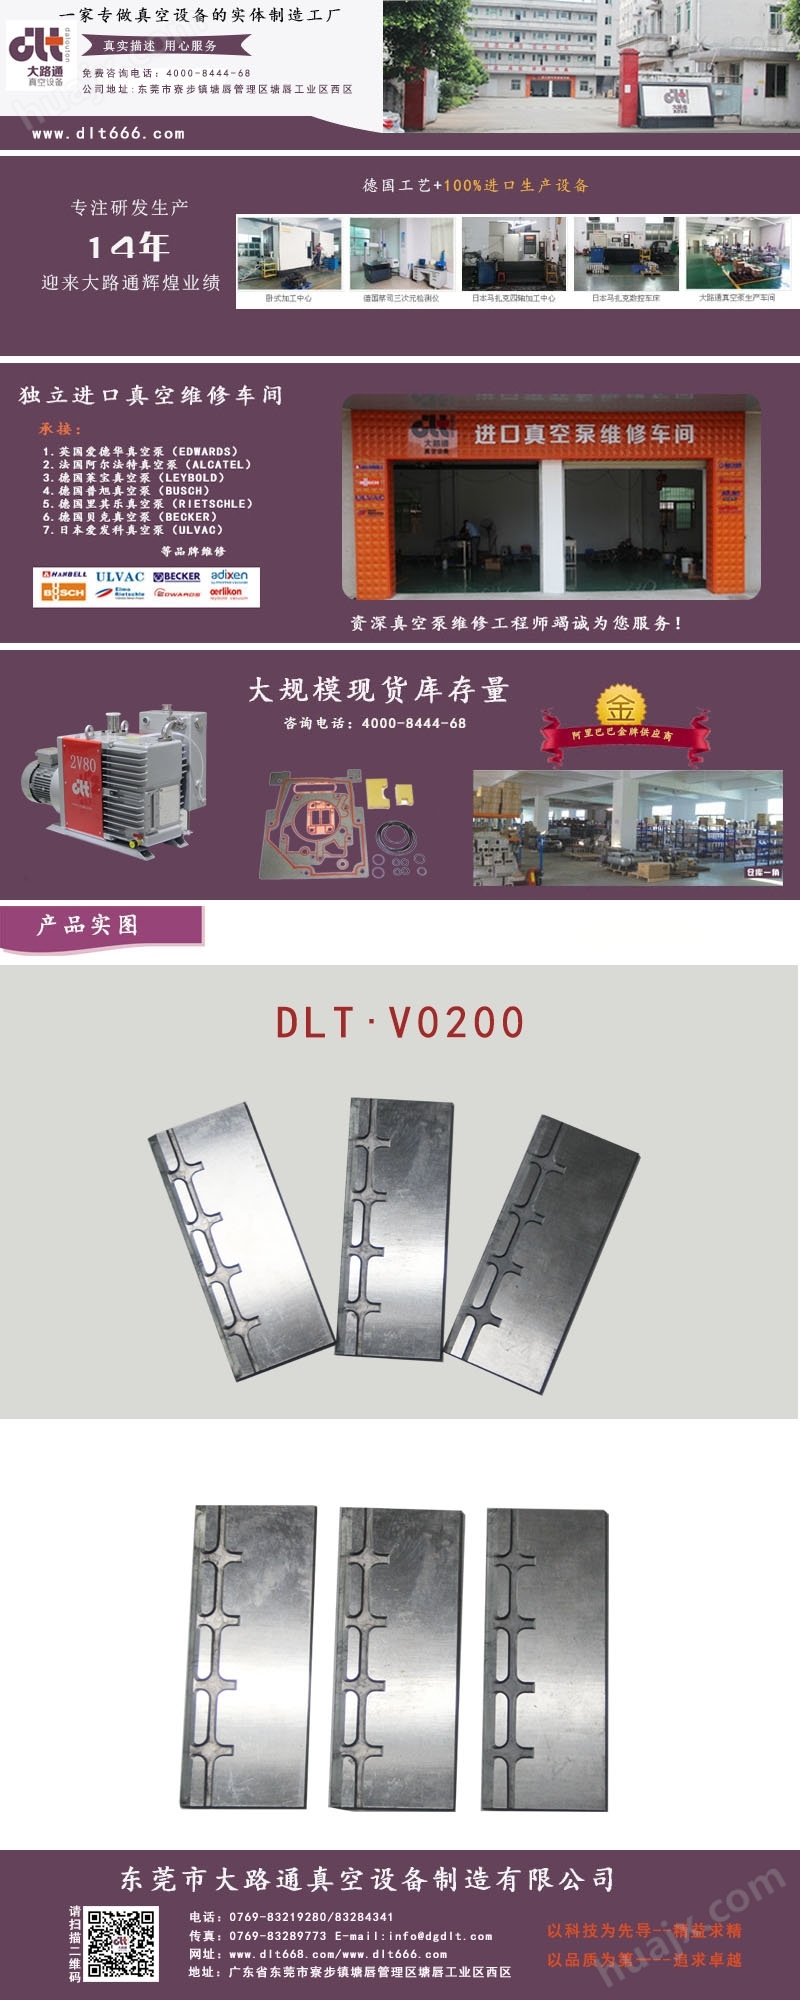 大路通DLT·V0200真空泵叶片/进口真空泵配件、旋片、碳晶片